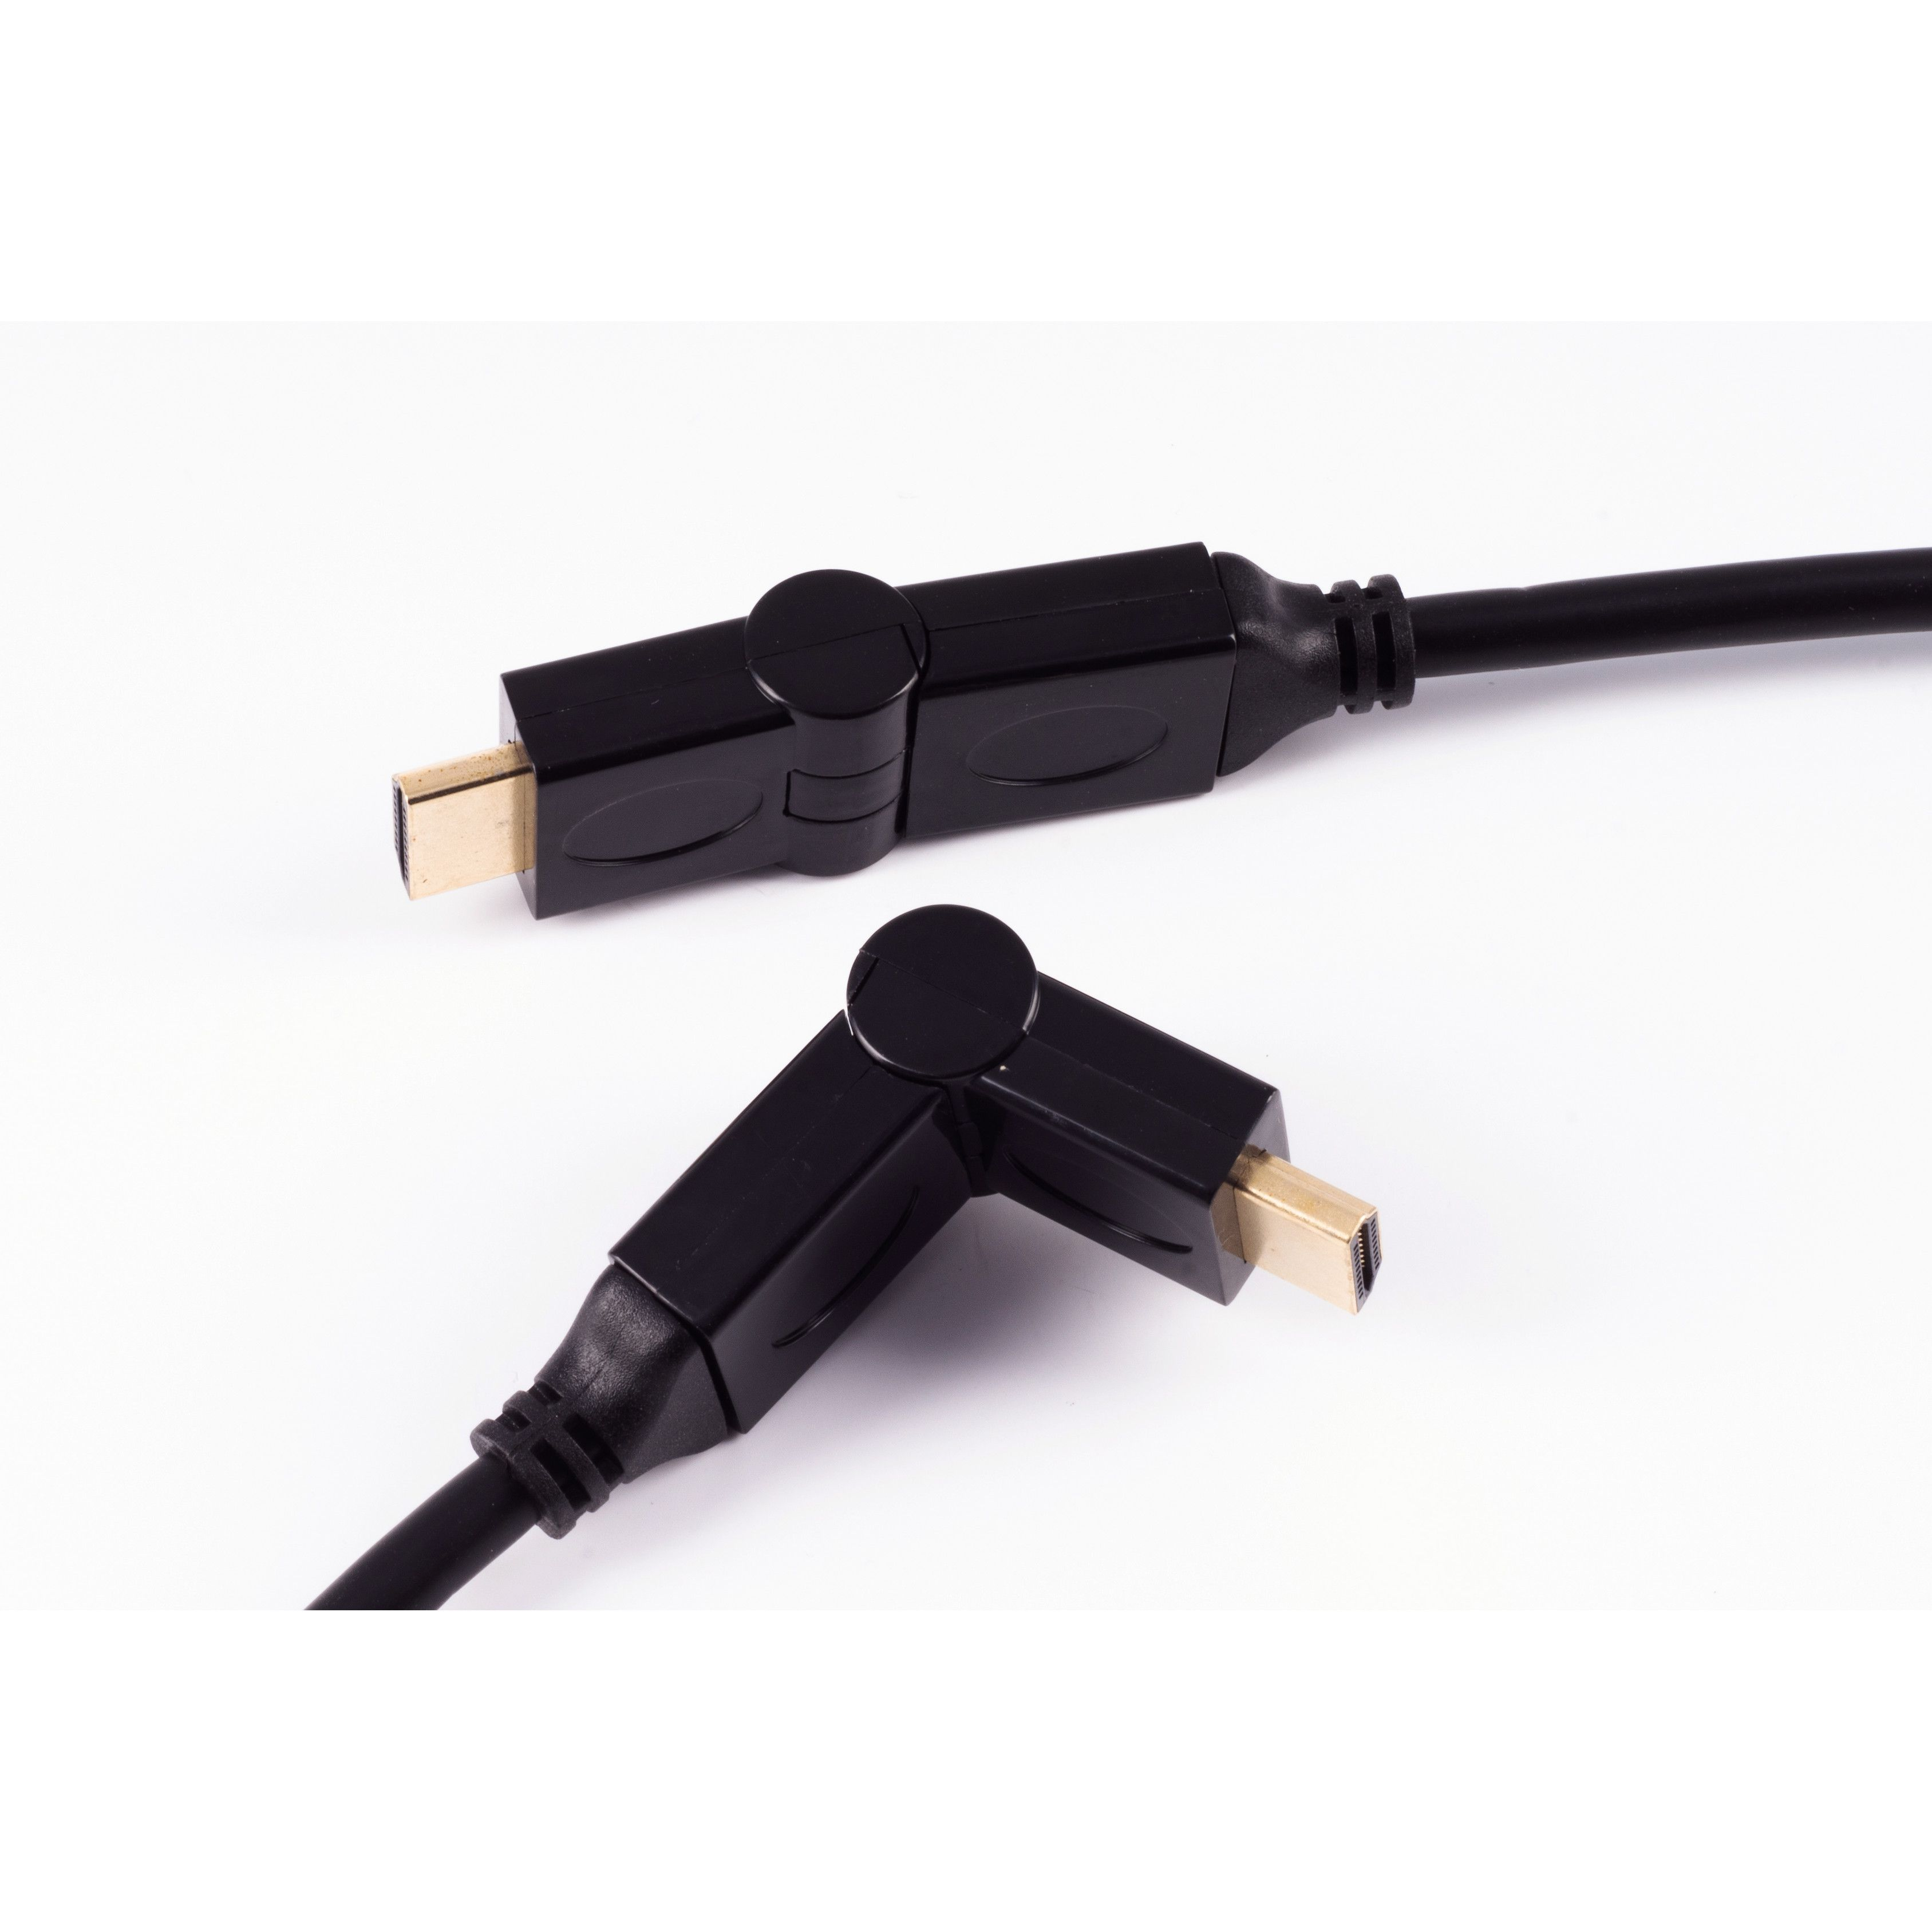 A-Stecker HDMI A-Stecker/HDMI Kabel HEAC 3m HDMI SHIVERPEAKS winkelbar